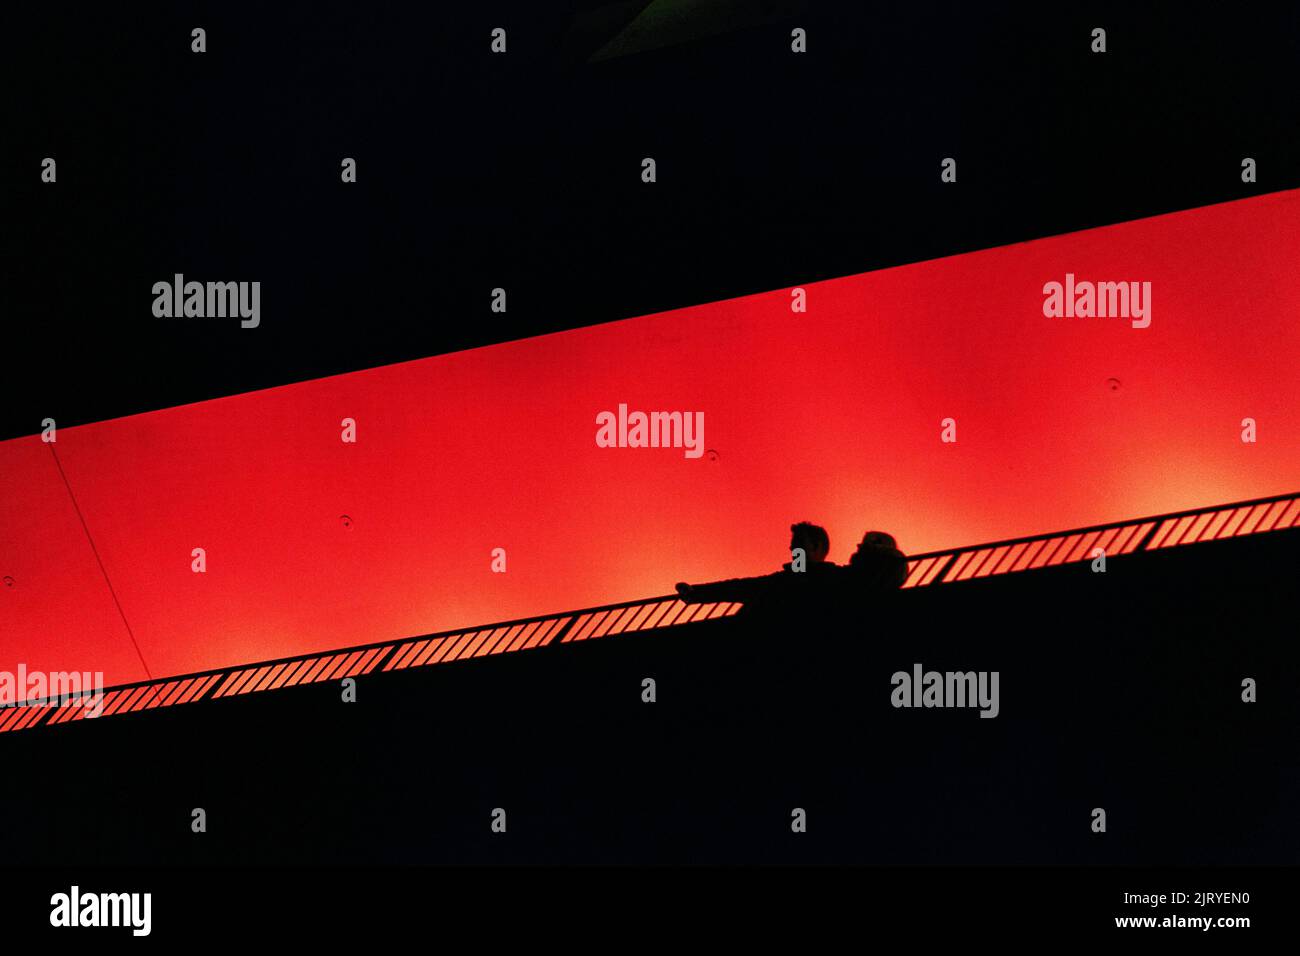 Deux personnes, couple debout sur la terrasse d'observation Plaza, en regardant vers le bas, silhouettes dans l'obscurité, orange illuminé, salle philharmonique d'Elbe dans le Banque D'Images